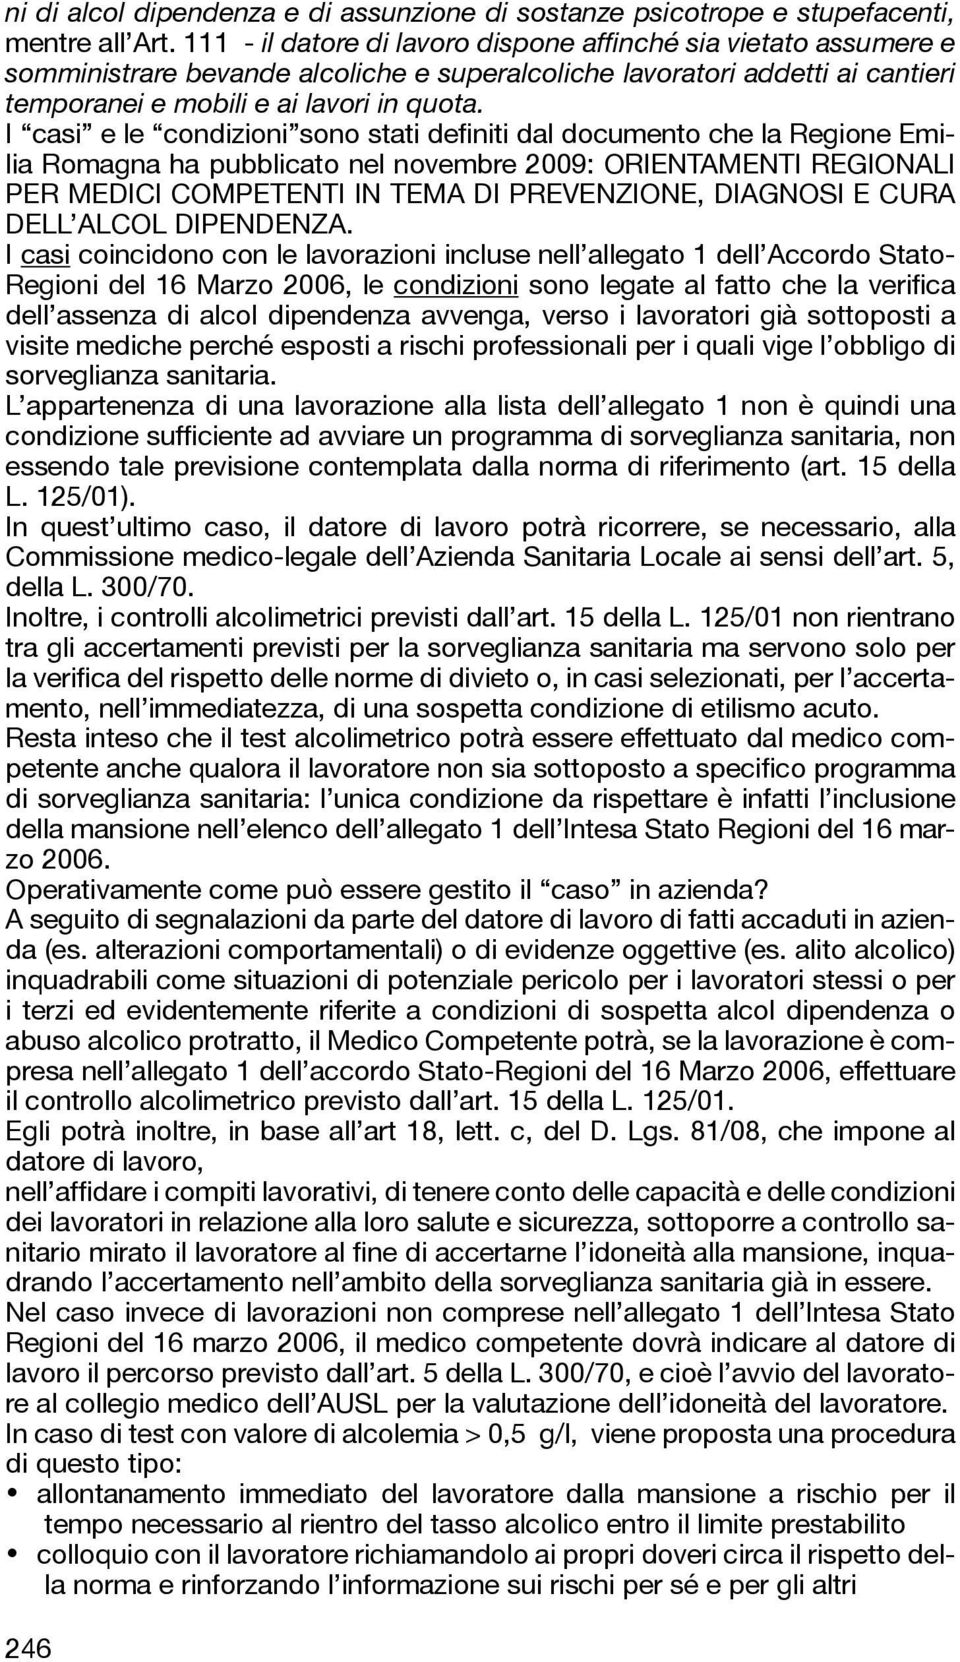 I casi e le condizioni sono stati definiti dal documento che la Regione Emilia Romagna ha pubblicato nel novembre 2009: ORIENTAMENTI REGIONALI PER MEDICI COMPETENTI IN TEMA DI PREVENZIONE, DIAGNOSI E